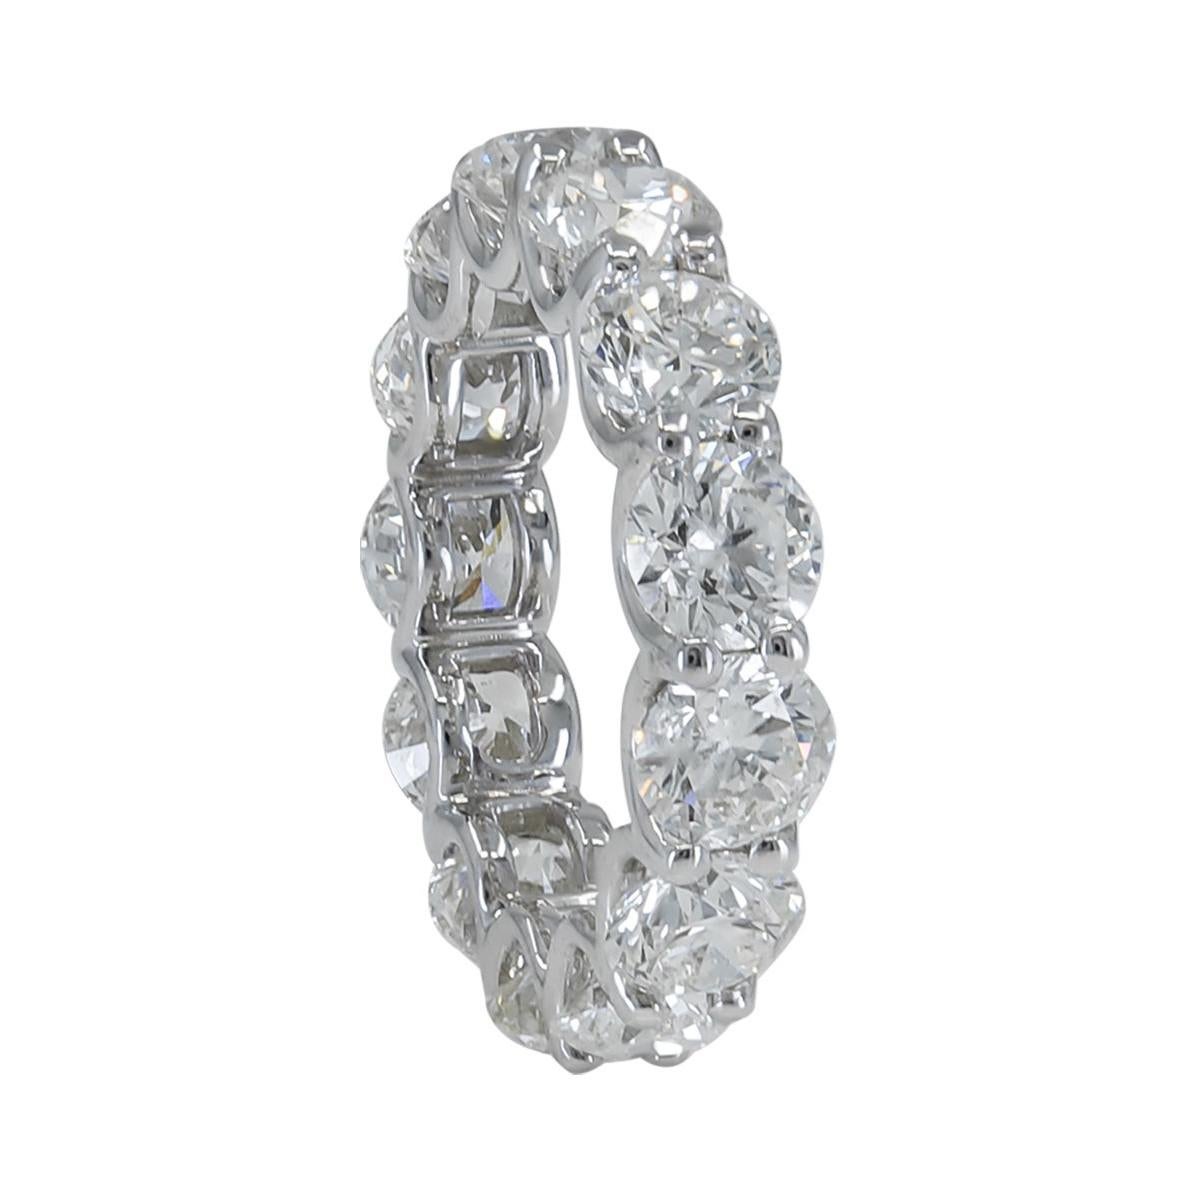 Spectra Fine Jewelry, GIA Certified 6.60 Carat Round Diamond Wedding Band